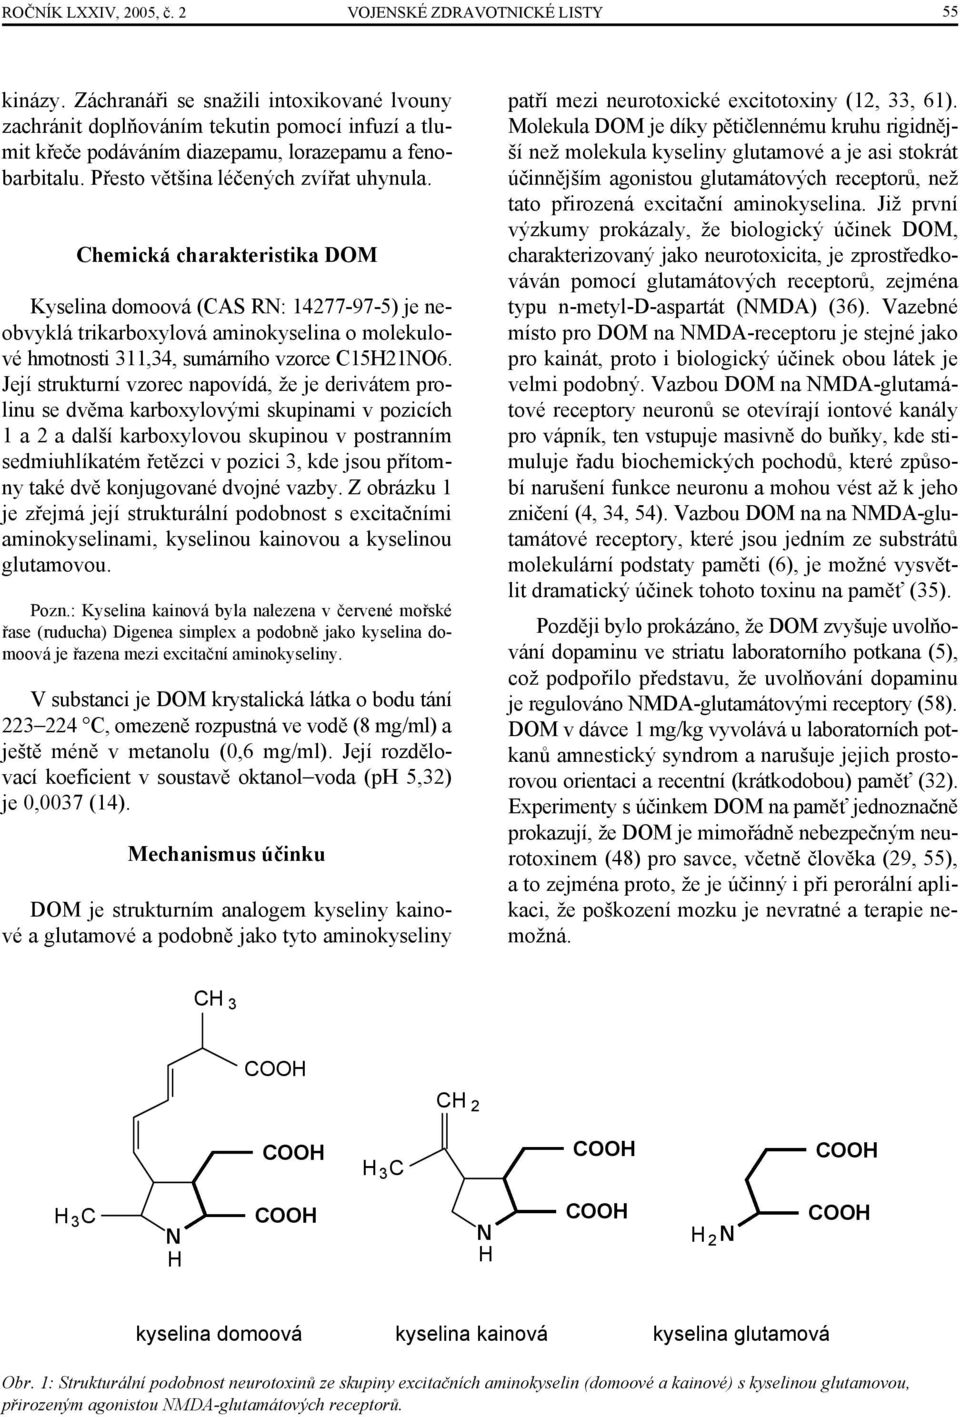 Chemická charakteristika DOM Kyselina domoová (CAS RN: 14277-97-5) je neobvyklá trikarboxylová aminokyselina o molekulové hmotnosti 311,34, sumárního vzorce C15H21NO6.